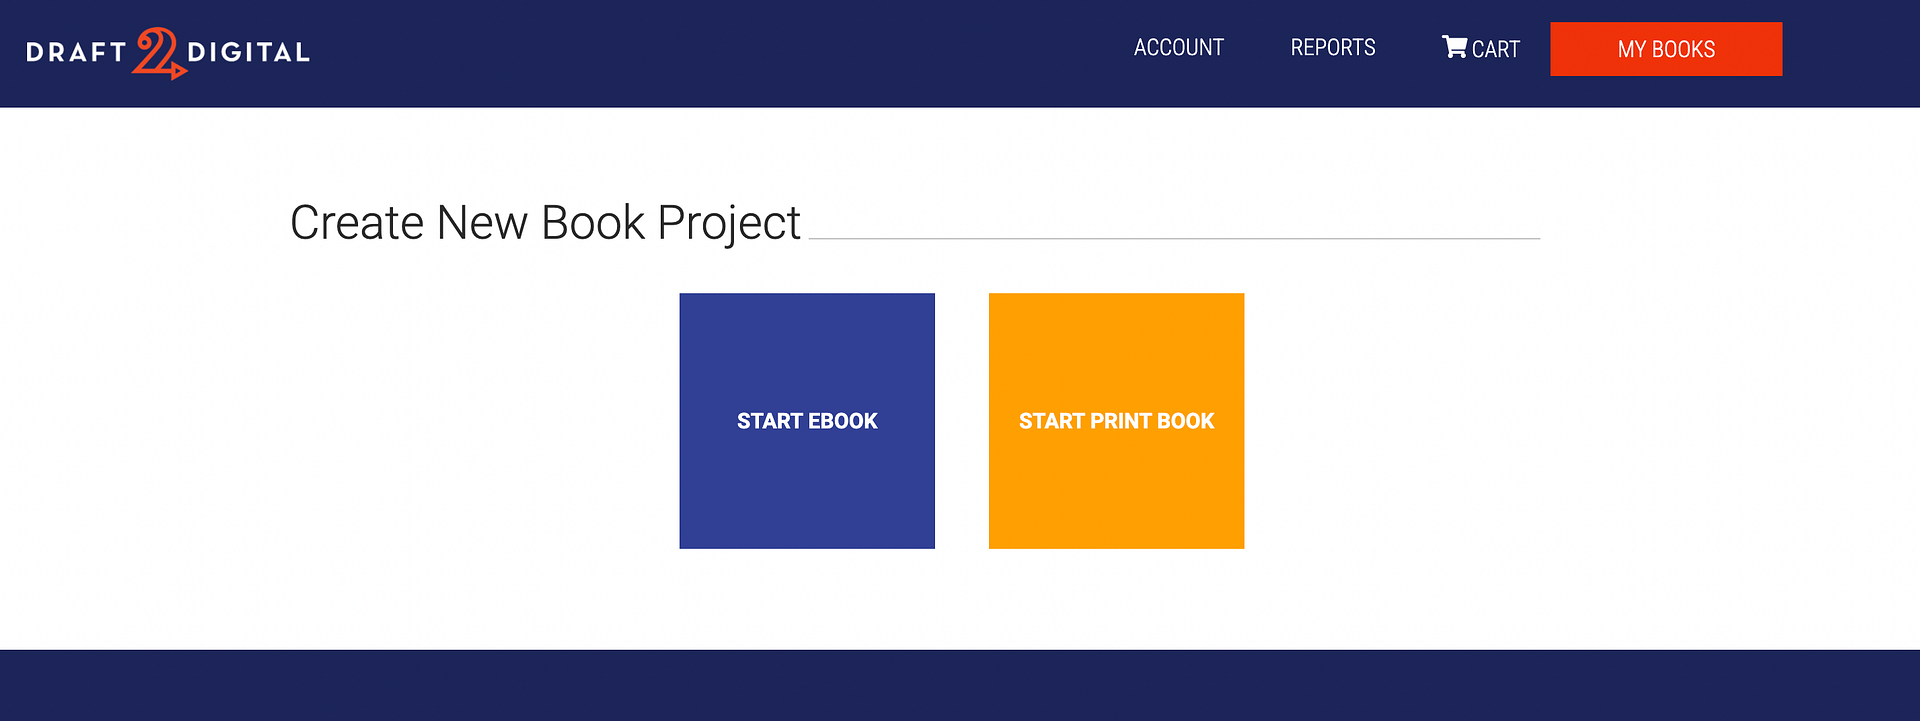 چگونه با ایجاد یک پروژه کتاب جدید در Draft2Digital، کتاب های الکترونیکی را به صورت آنلاین بفروشیم.